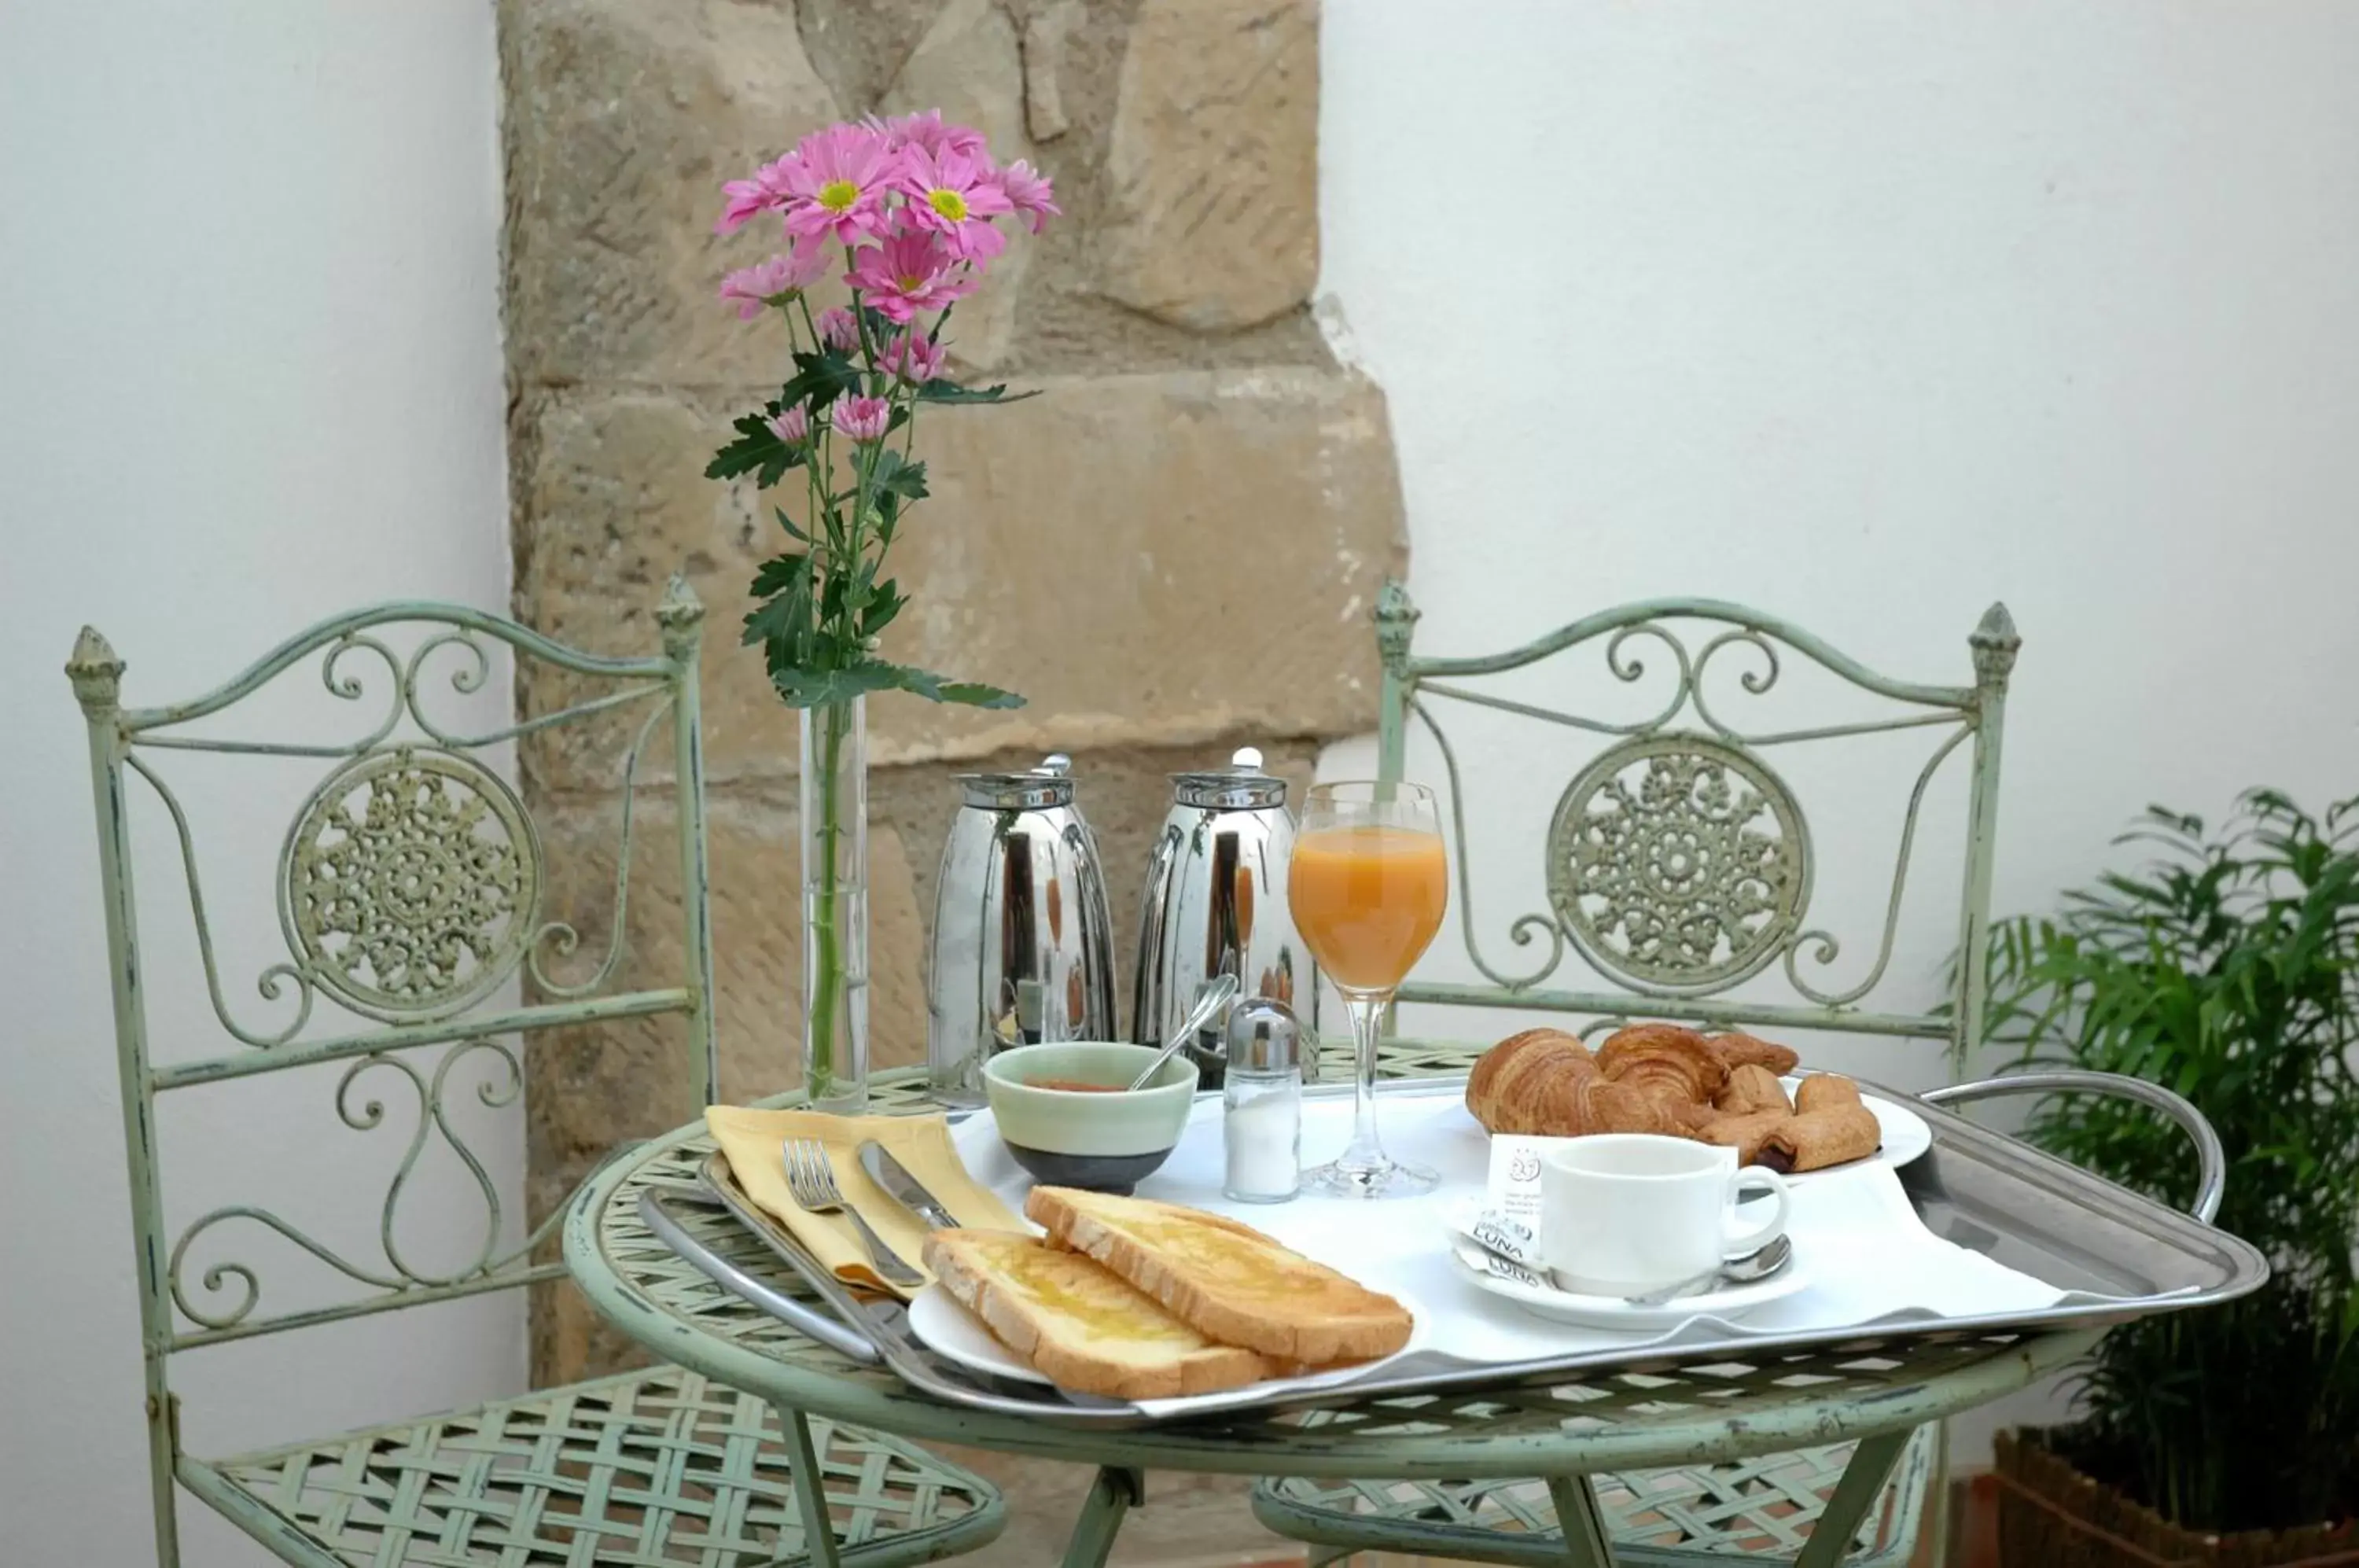 Food and drinks in Hotel Puerta de la Luna